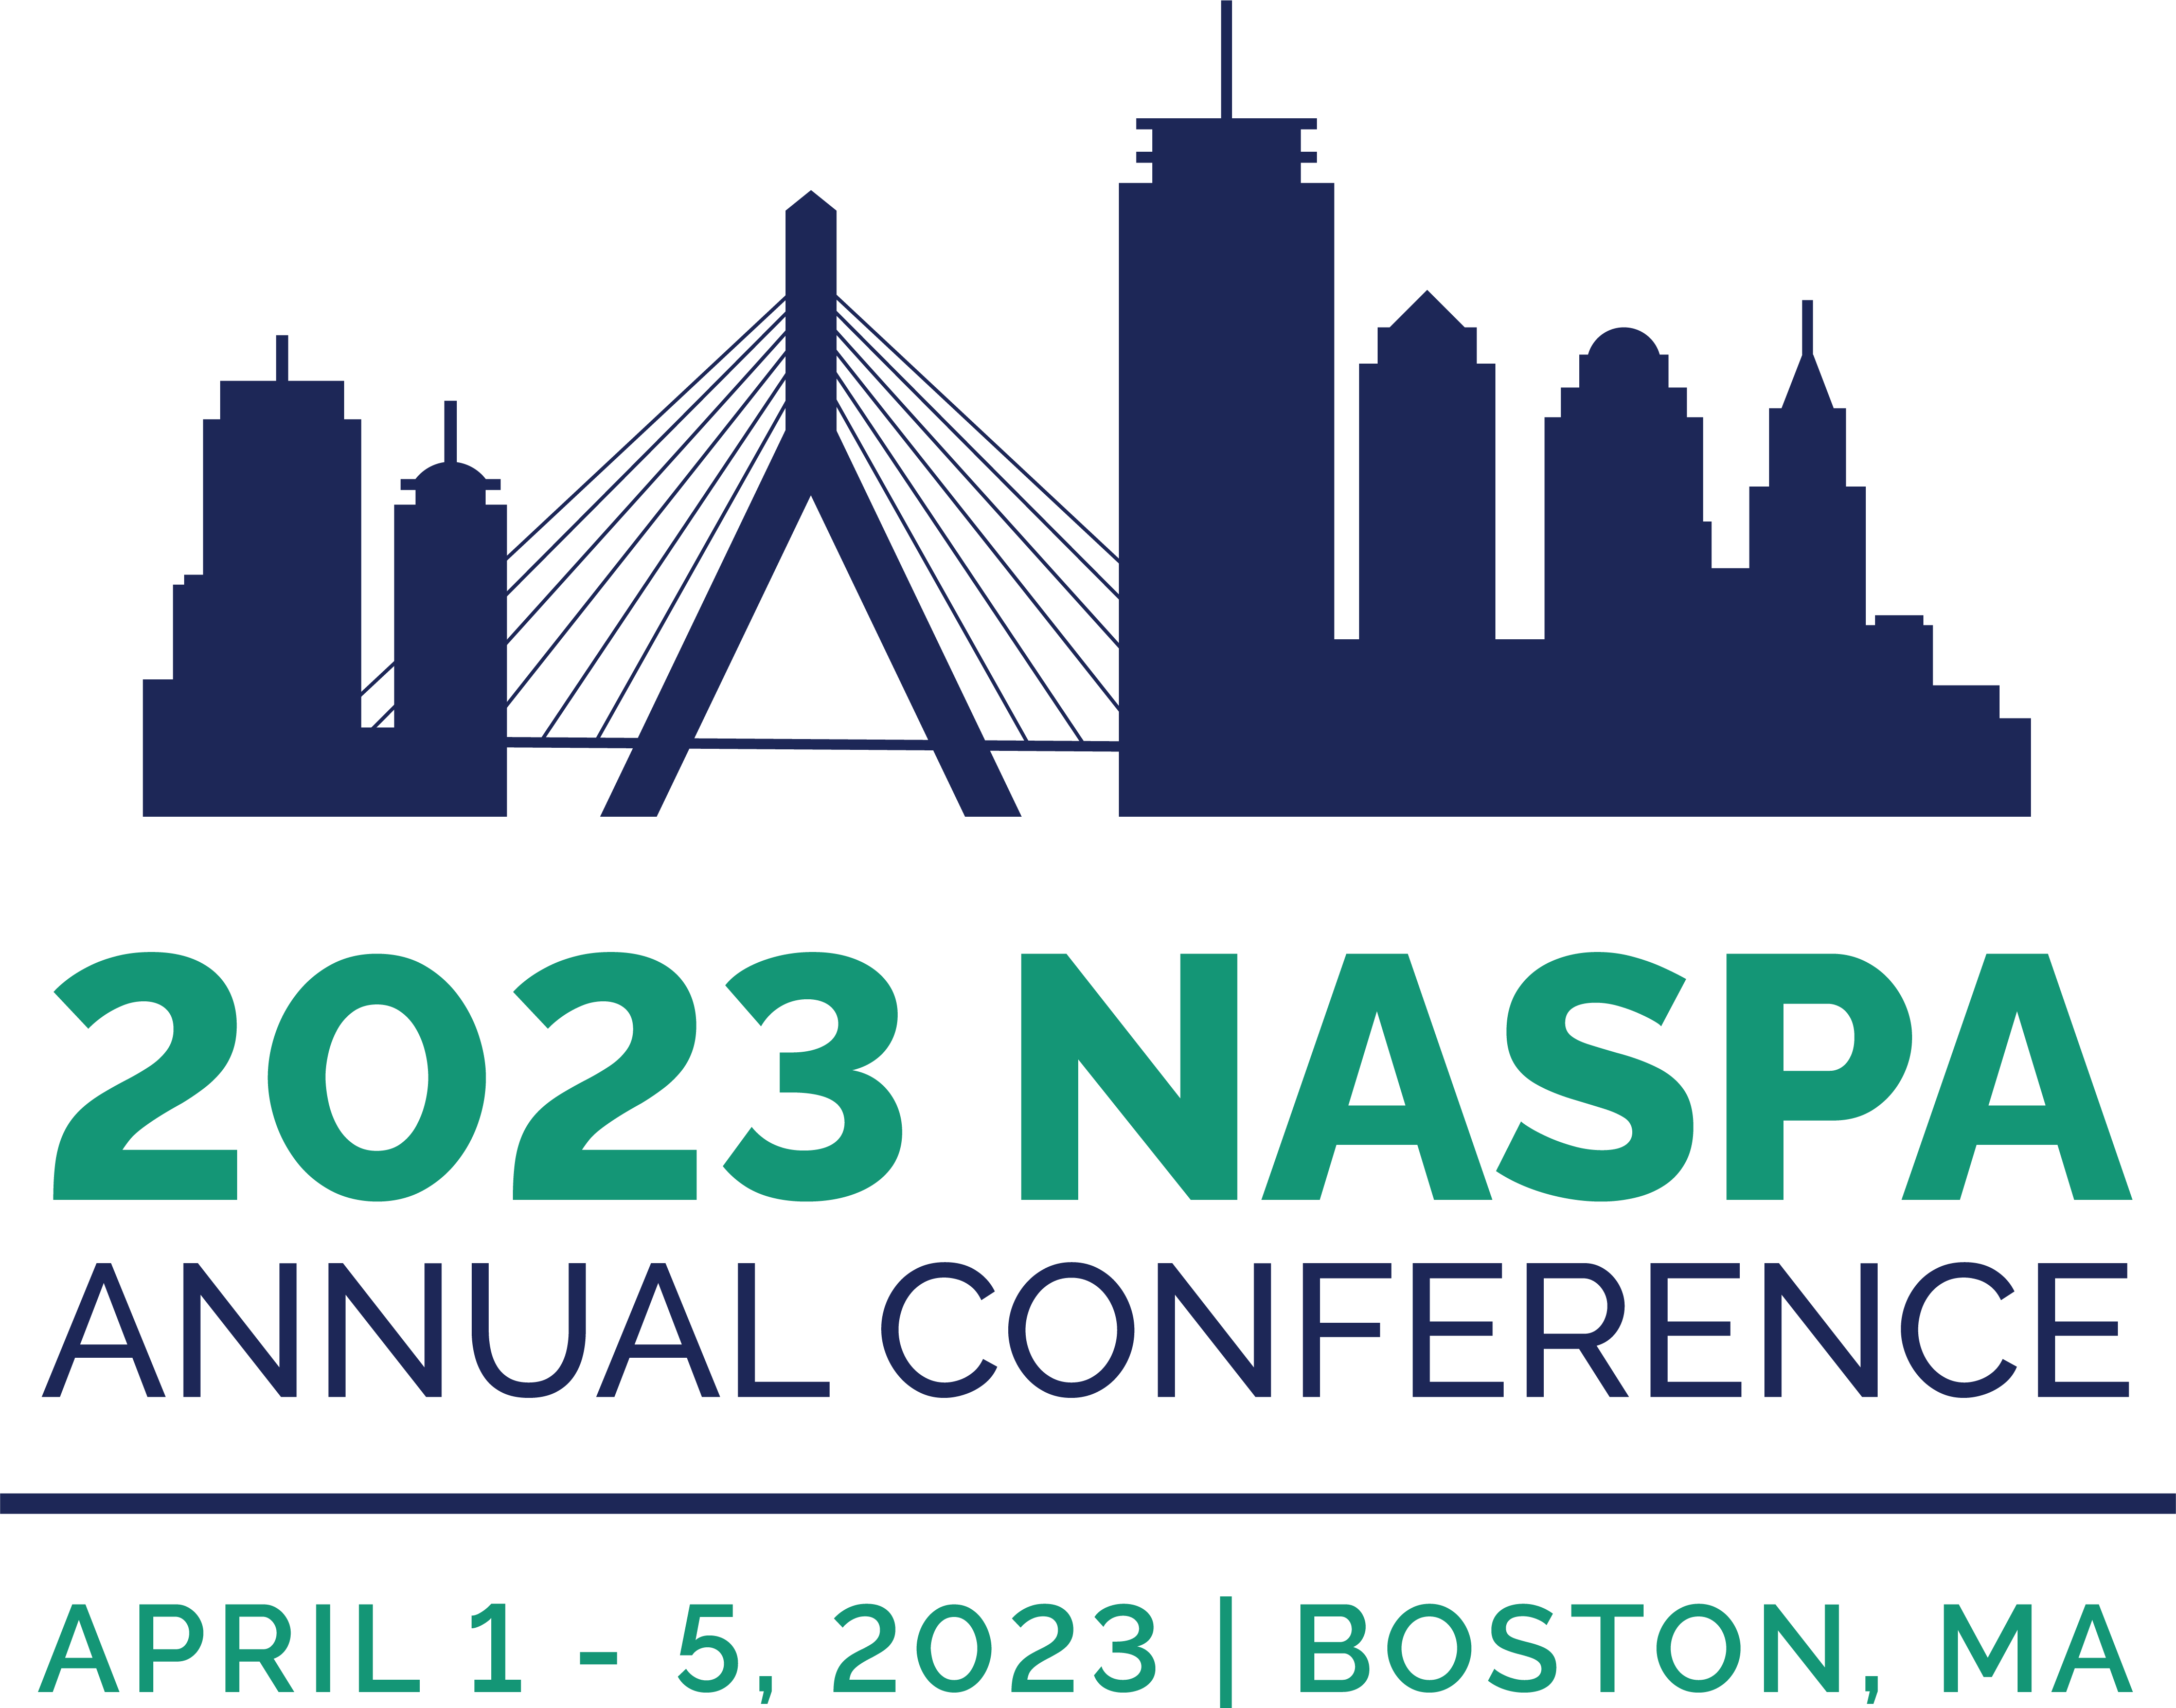 2023 NASPA Annual Conference 2023 NASPA Annual Conference